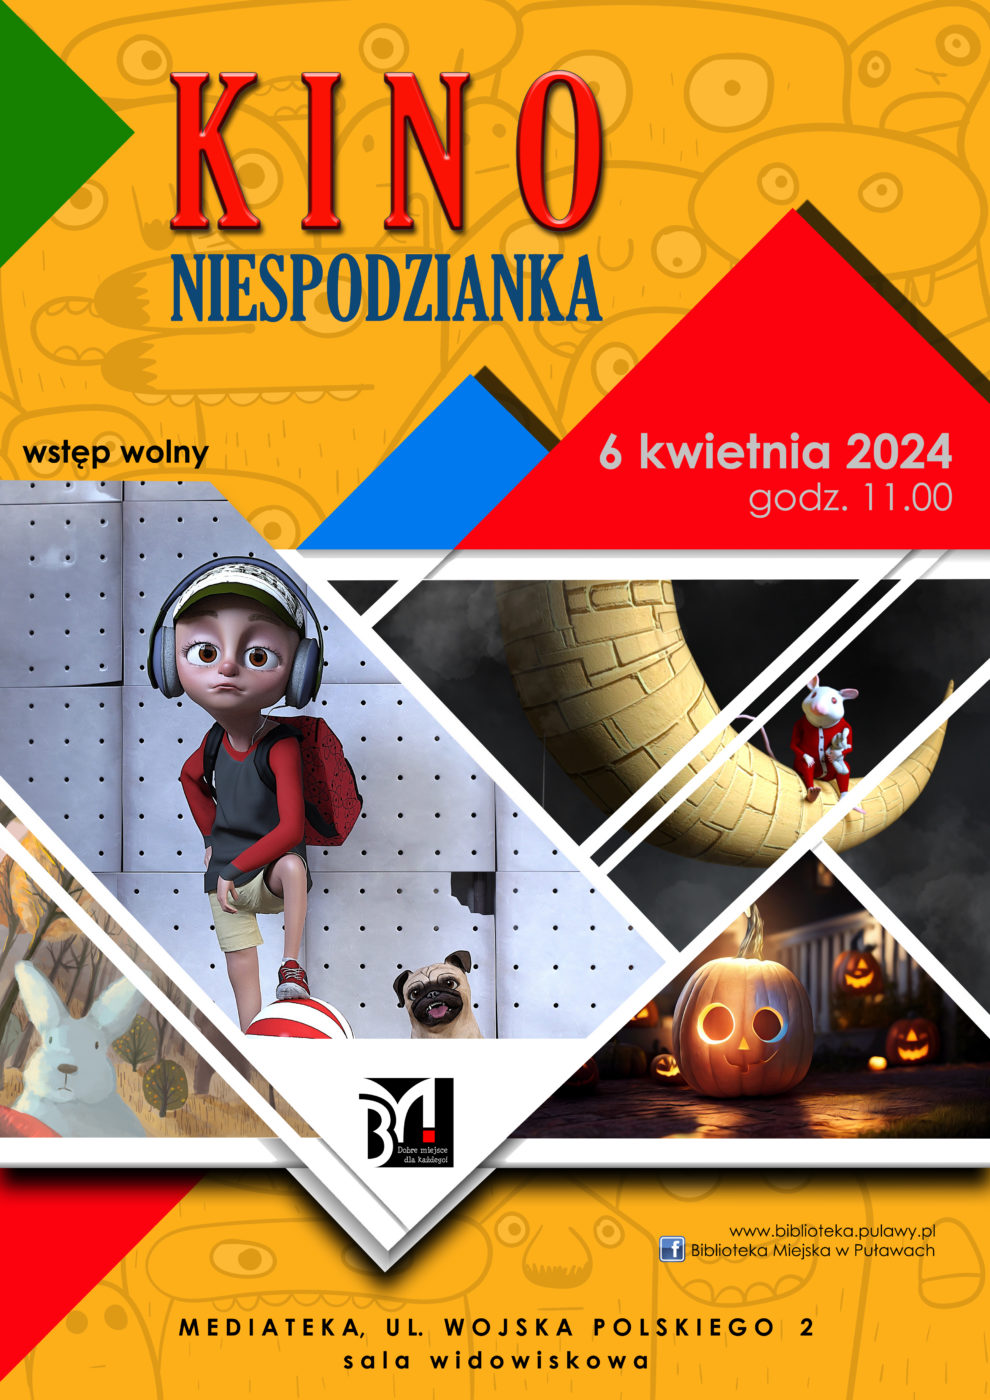 Kino Niespodzianka. 6 kwietnia 2024, godz. 11.00 - seans rodzinny. Mediateka, ul. Wojska Polskiego 2, sala widowiskowa.